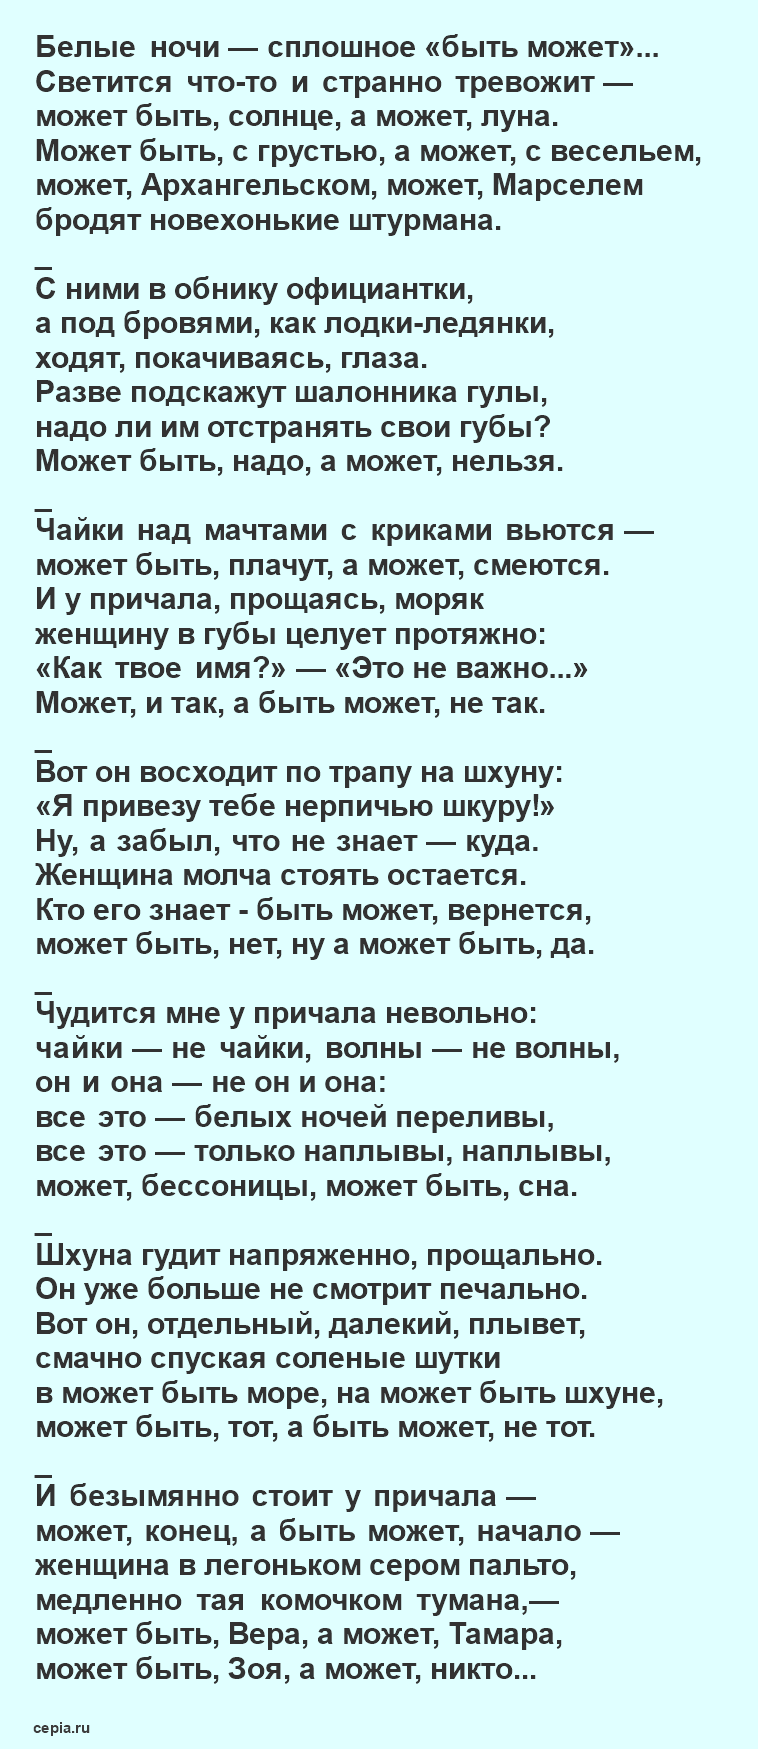 Читать онлайн бесплатно самые лучшие известные стихи Евгения Евтушенко - Белые ночи в Архангельске